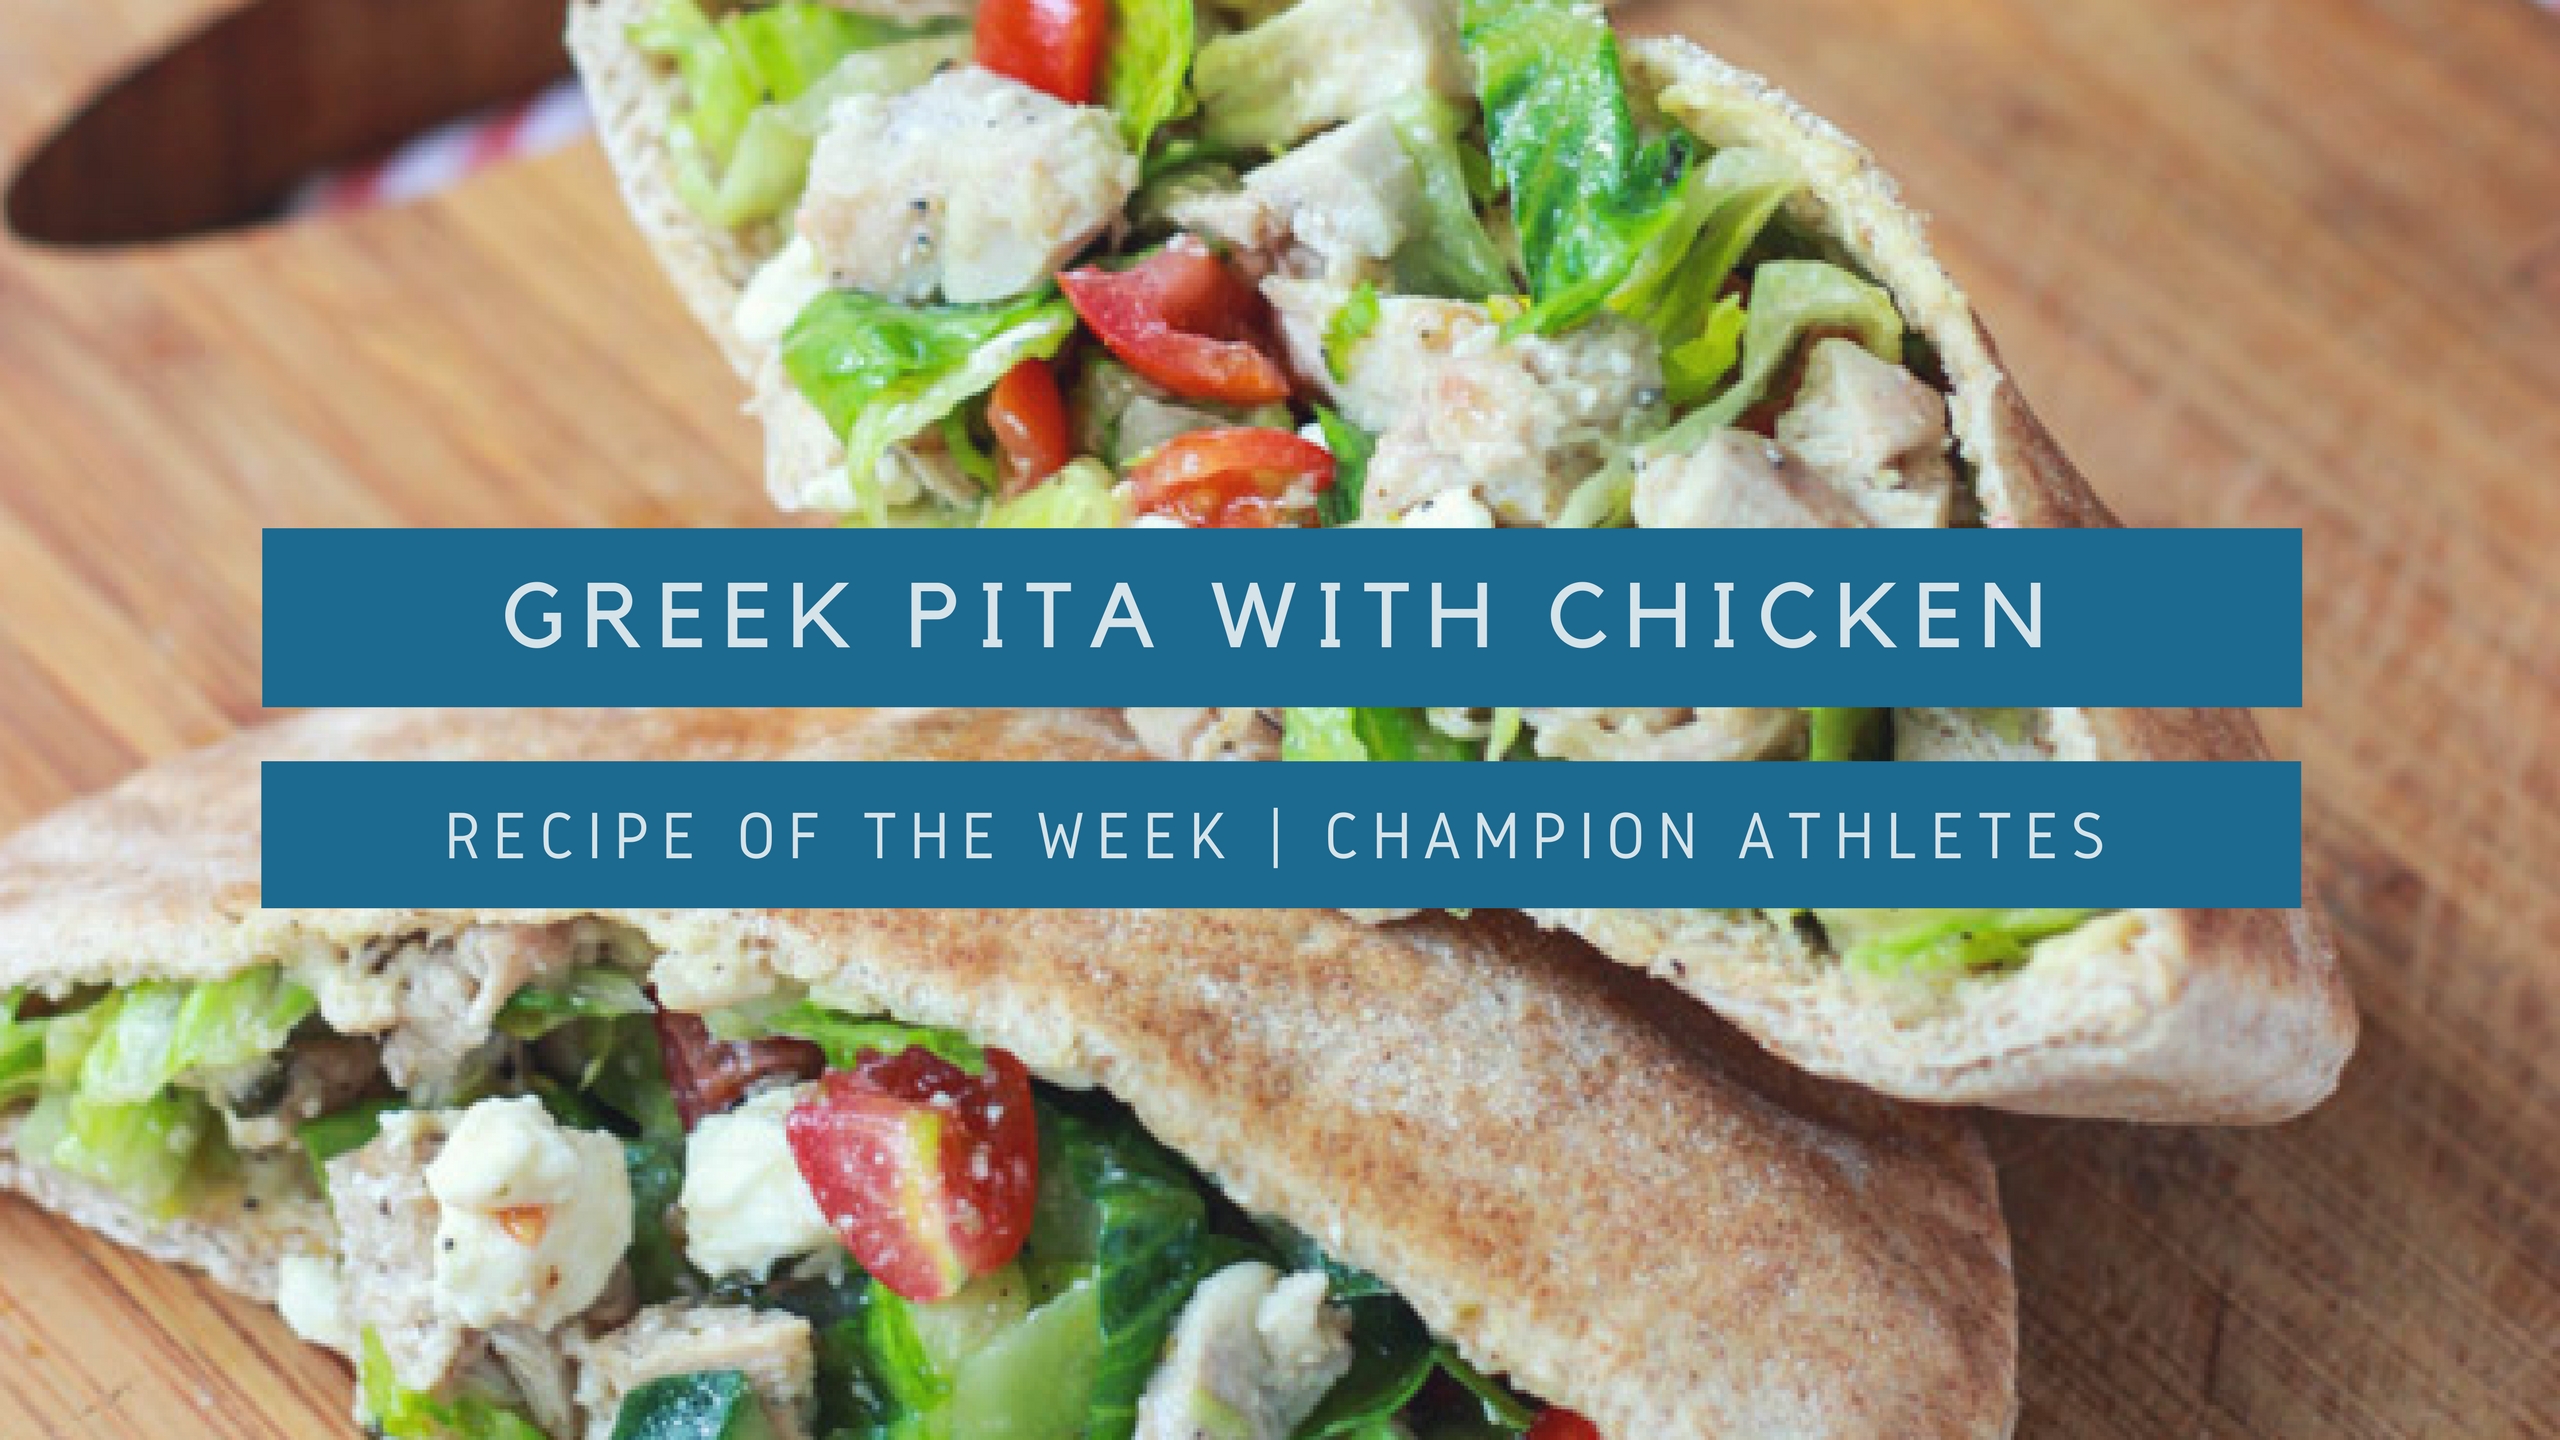 Greek pita with chicken